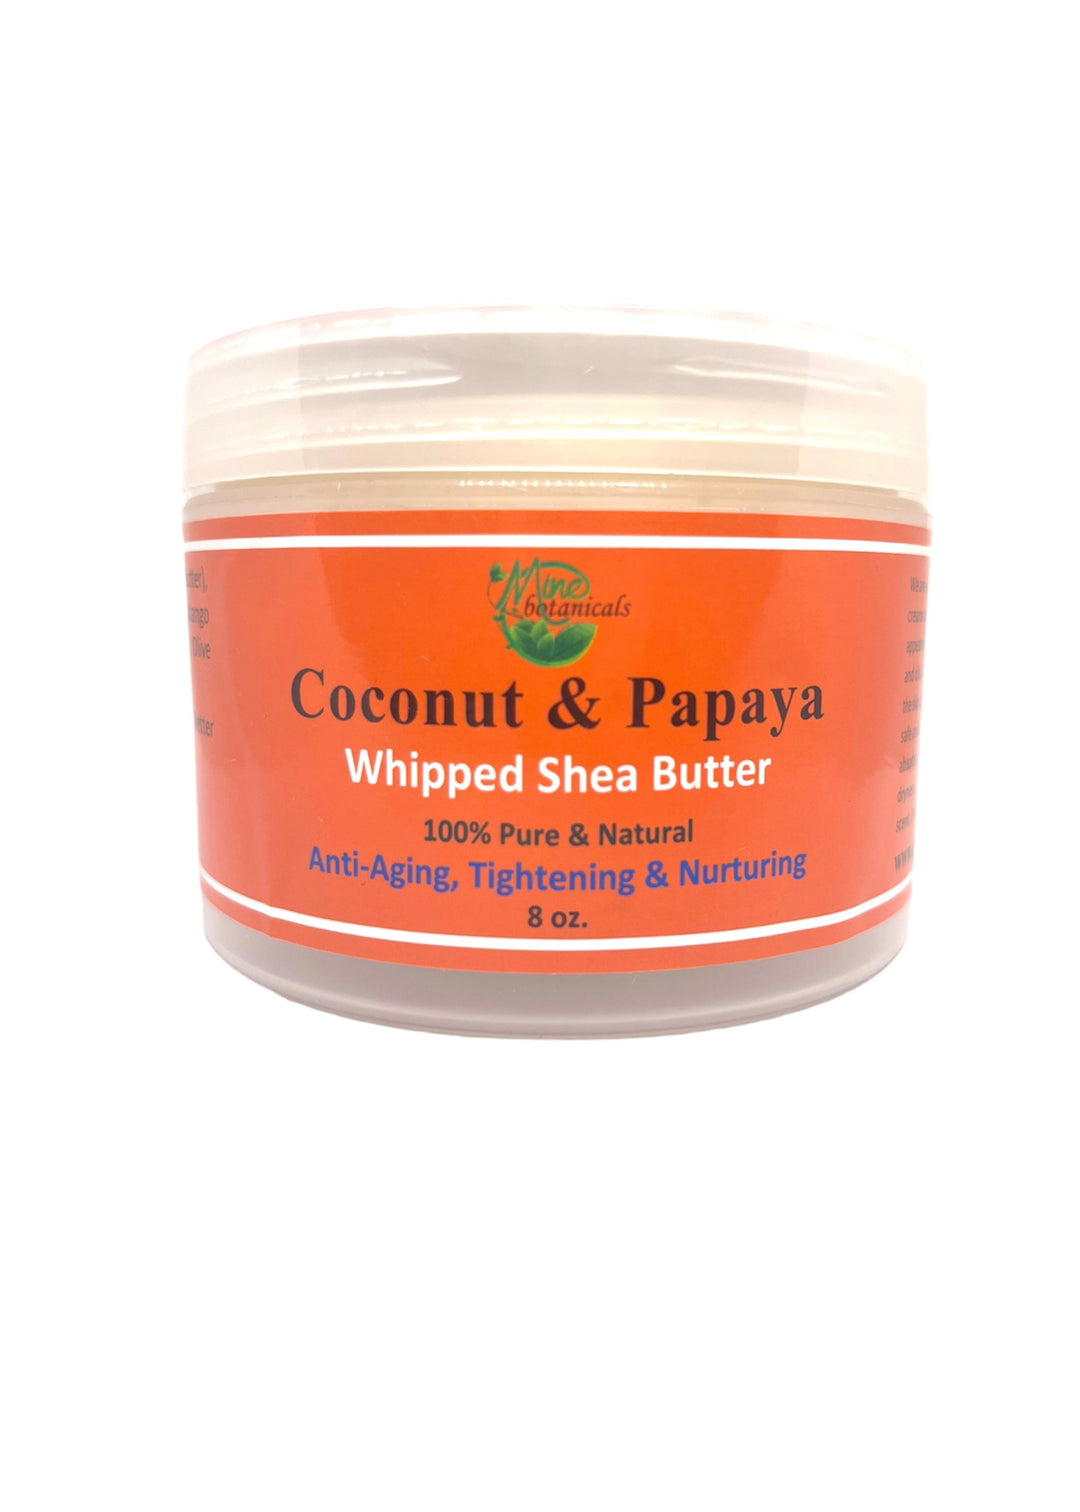 COCONUT & PAPAYA WHIPPED SHEA BUTTER